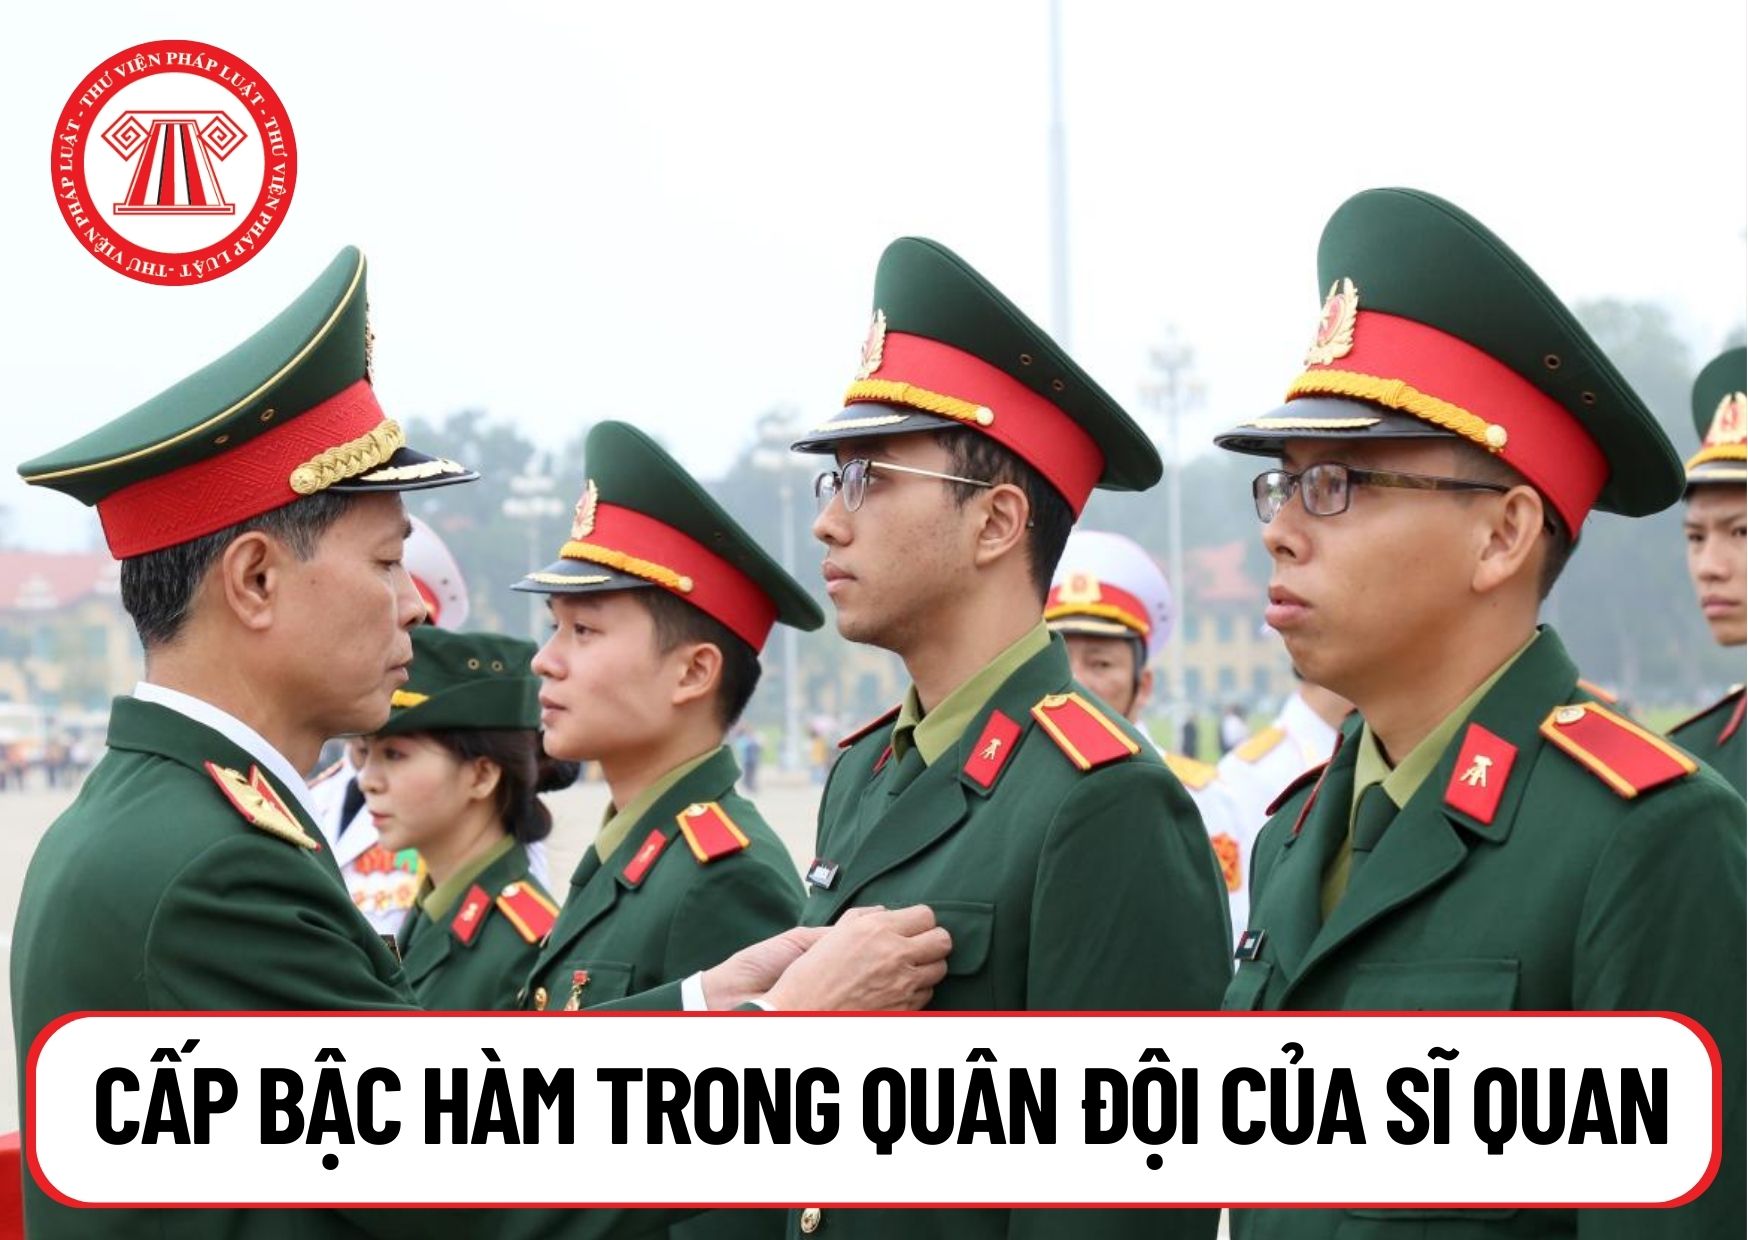 Hệ thống cấp bậc hàm trong Quân đội của sĩ quan quân đội nhân dân Việt Nam hiện nay như thế nào?